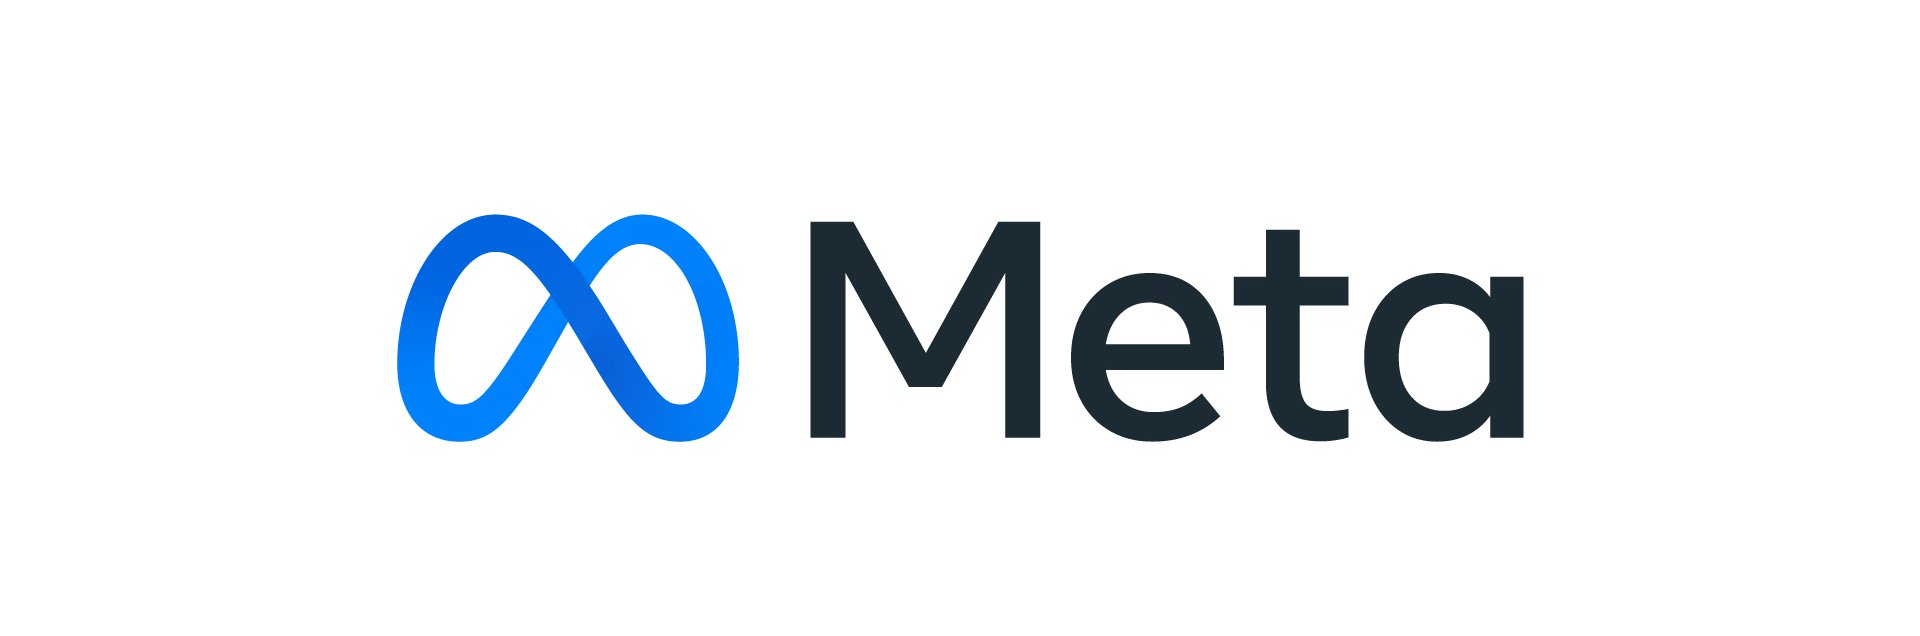 Facebook wird zu Meta - das neue Logo